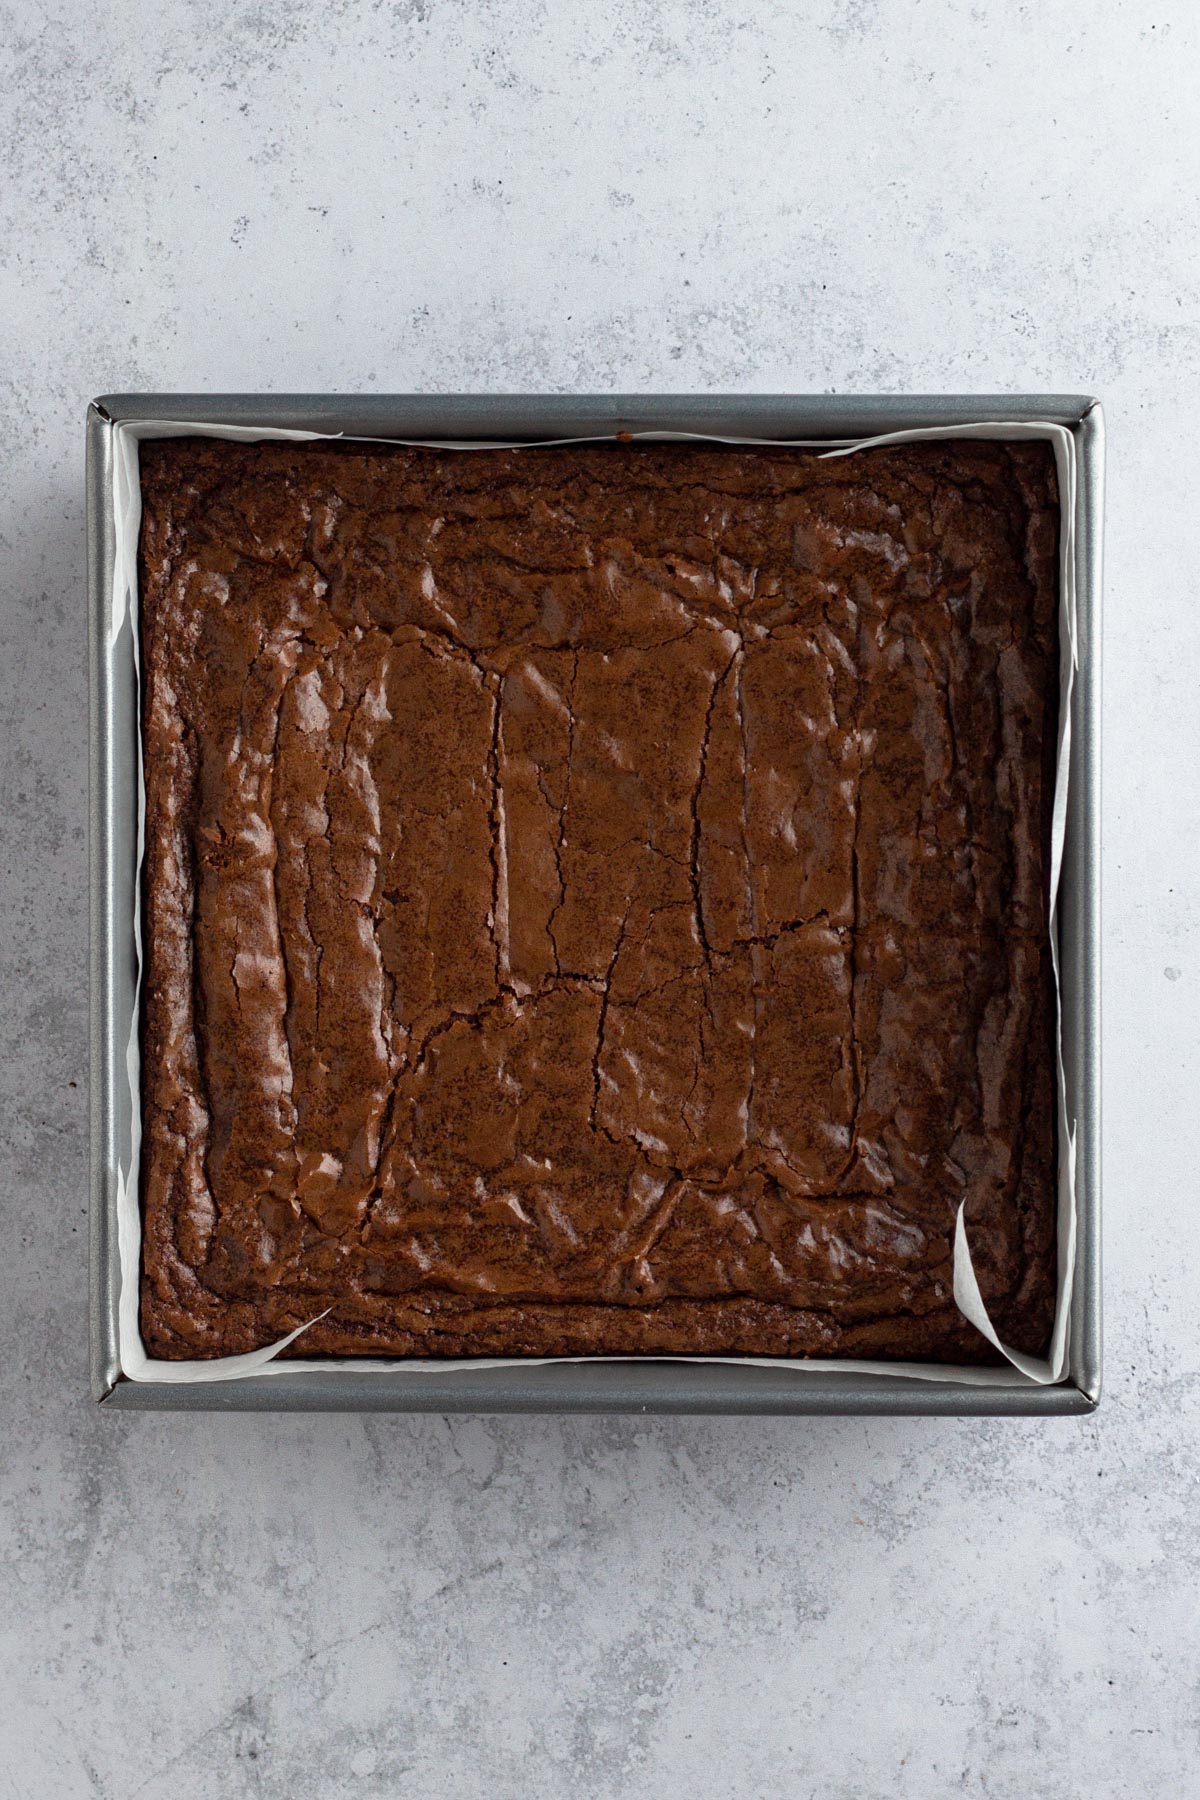 Baked brownies in a square metal pan.